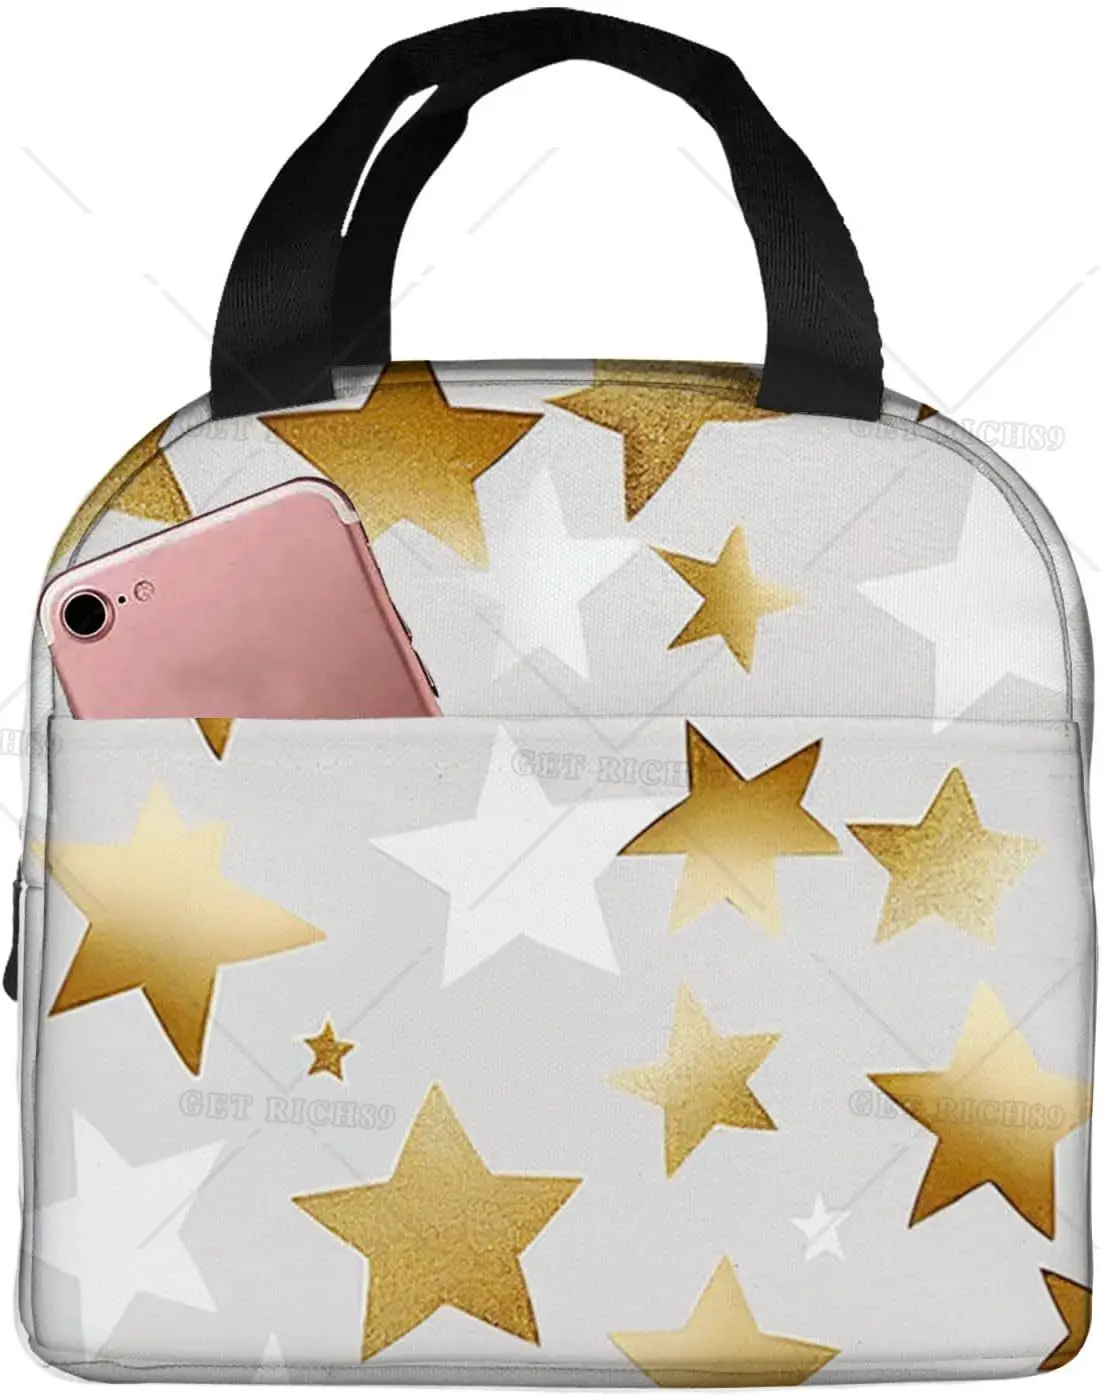 

Изолированный Ланч-бокс со сверкающими золотыми звездами, многоразовая Герметичная сумка-тоут для ланча для женщин и мужчин, для работы, офиса, пикника, путешествий